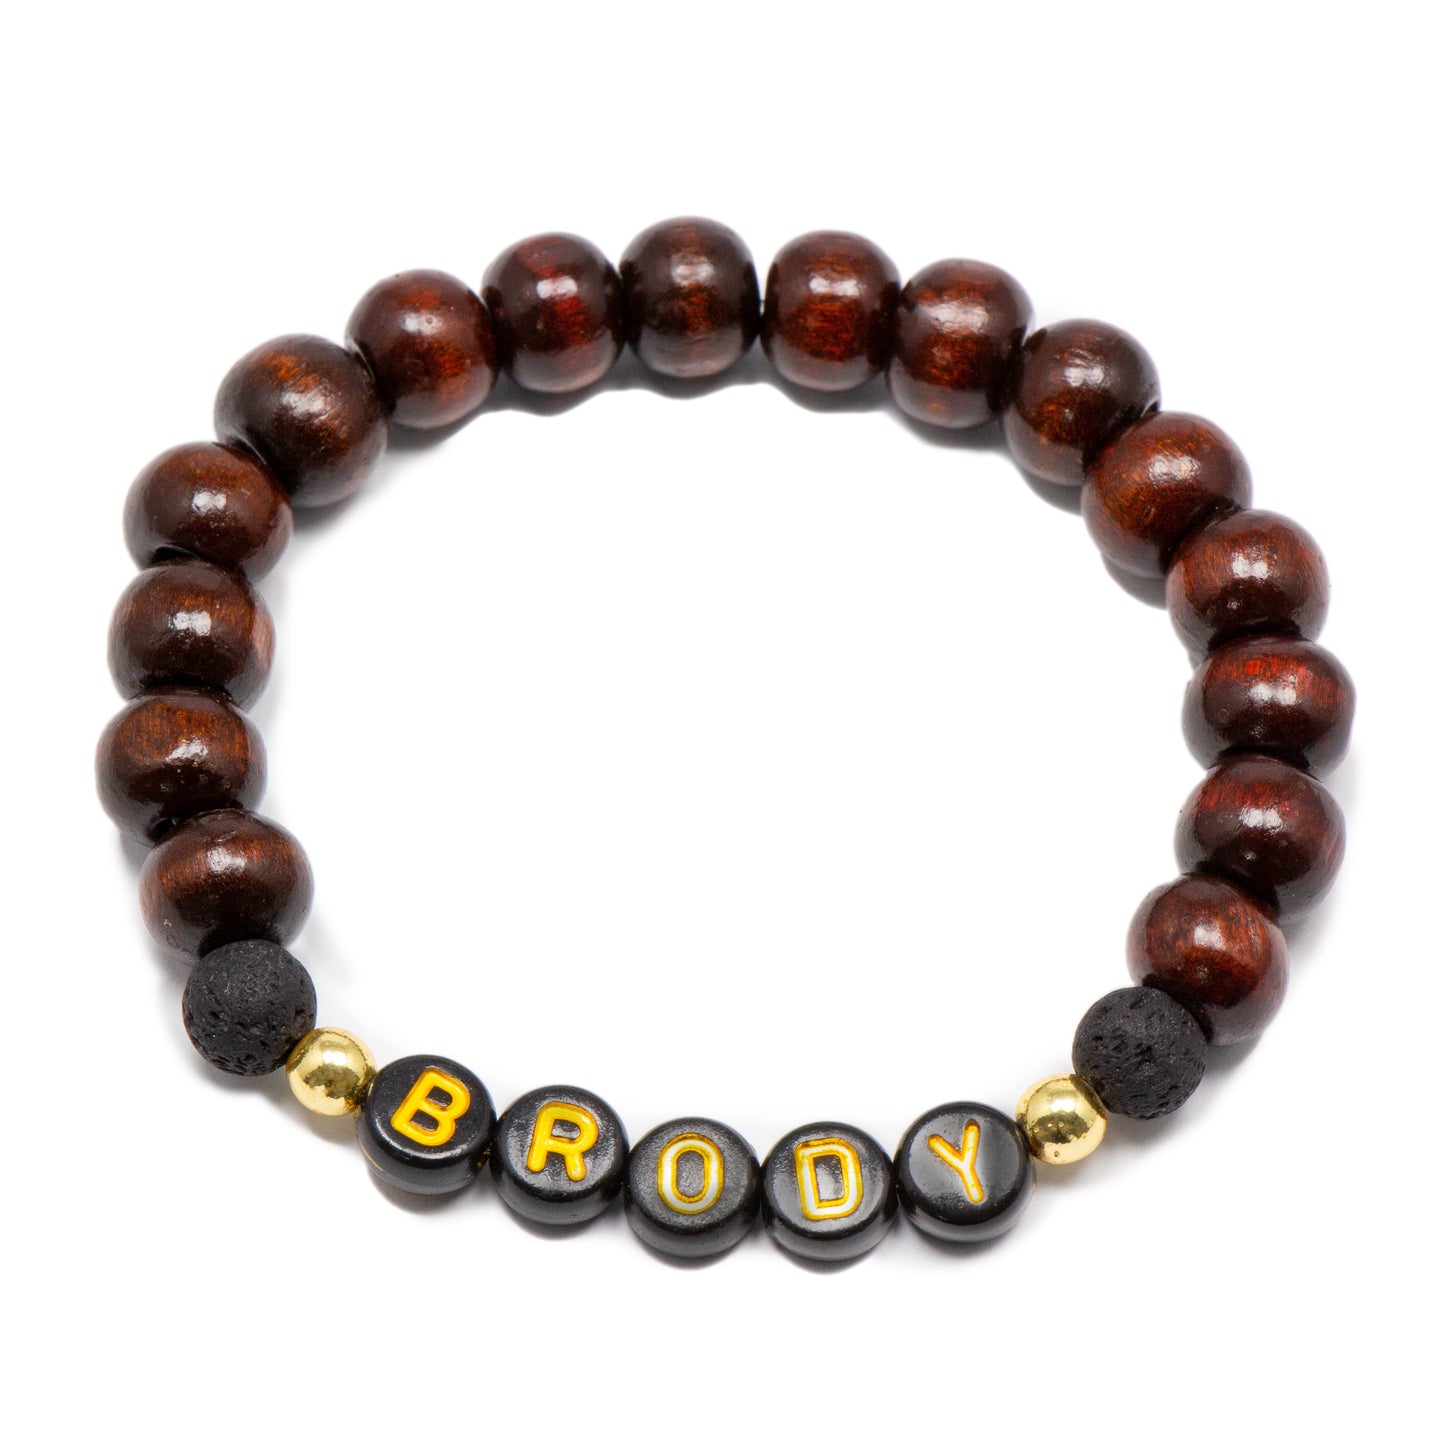 Masculine boys bracelets / black brown wooden bracelet / lava stone stretch bracelets for kids